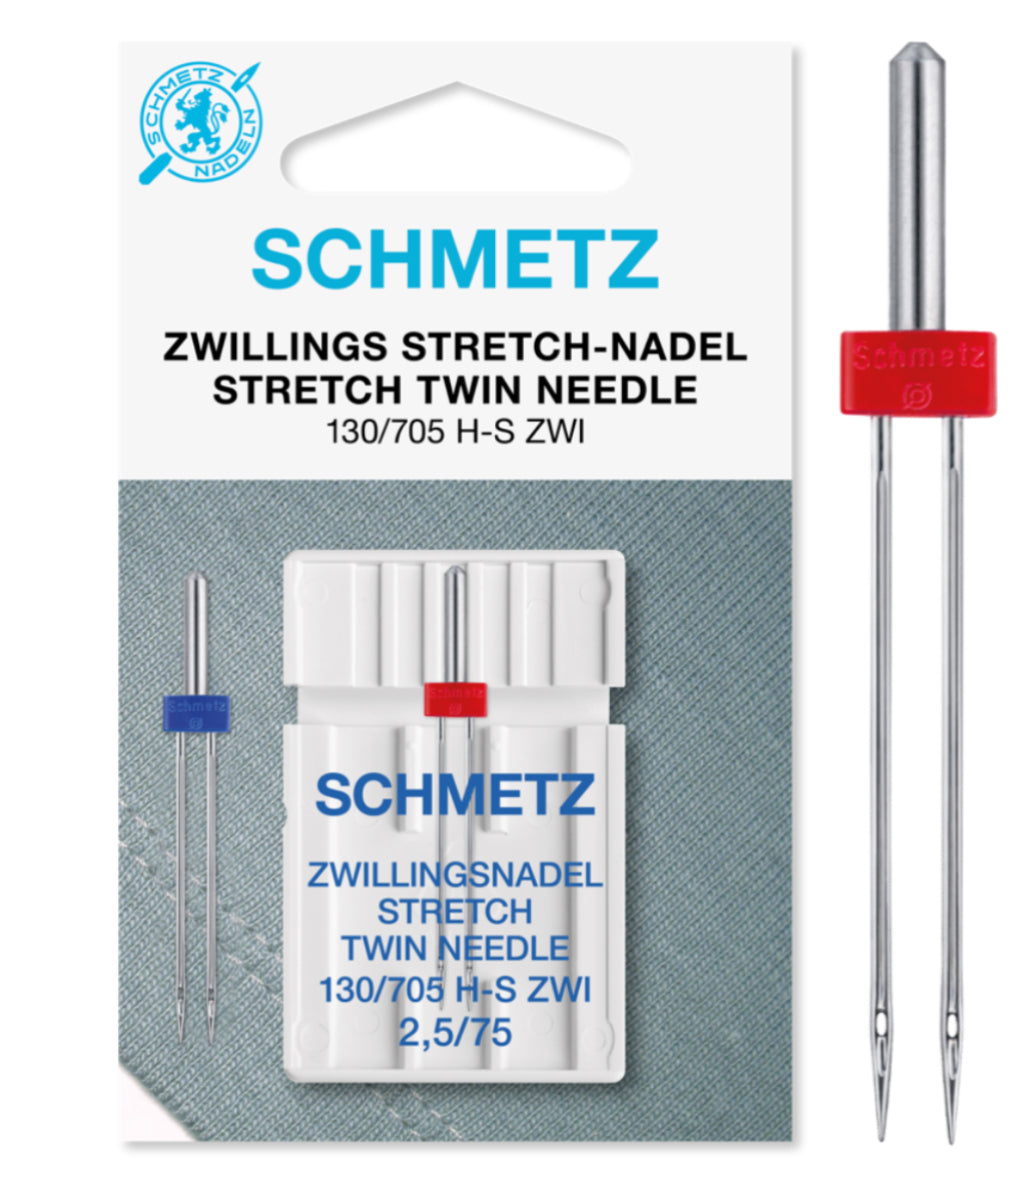 Schmetz Stretch Doppelnadel No. 2,0 / 75